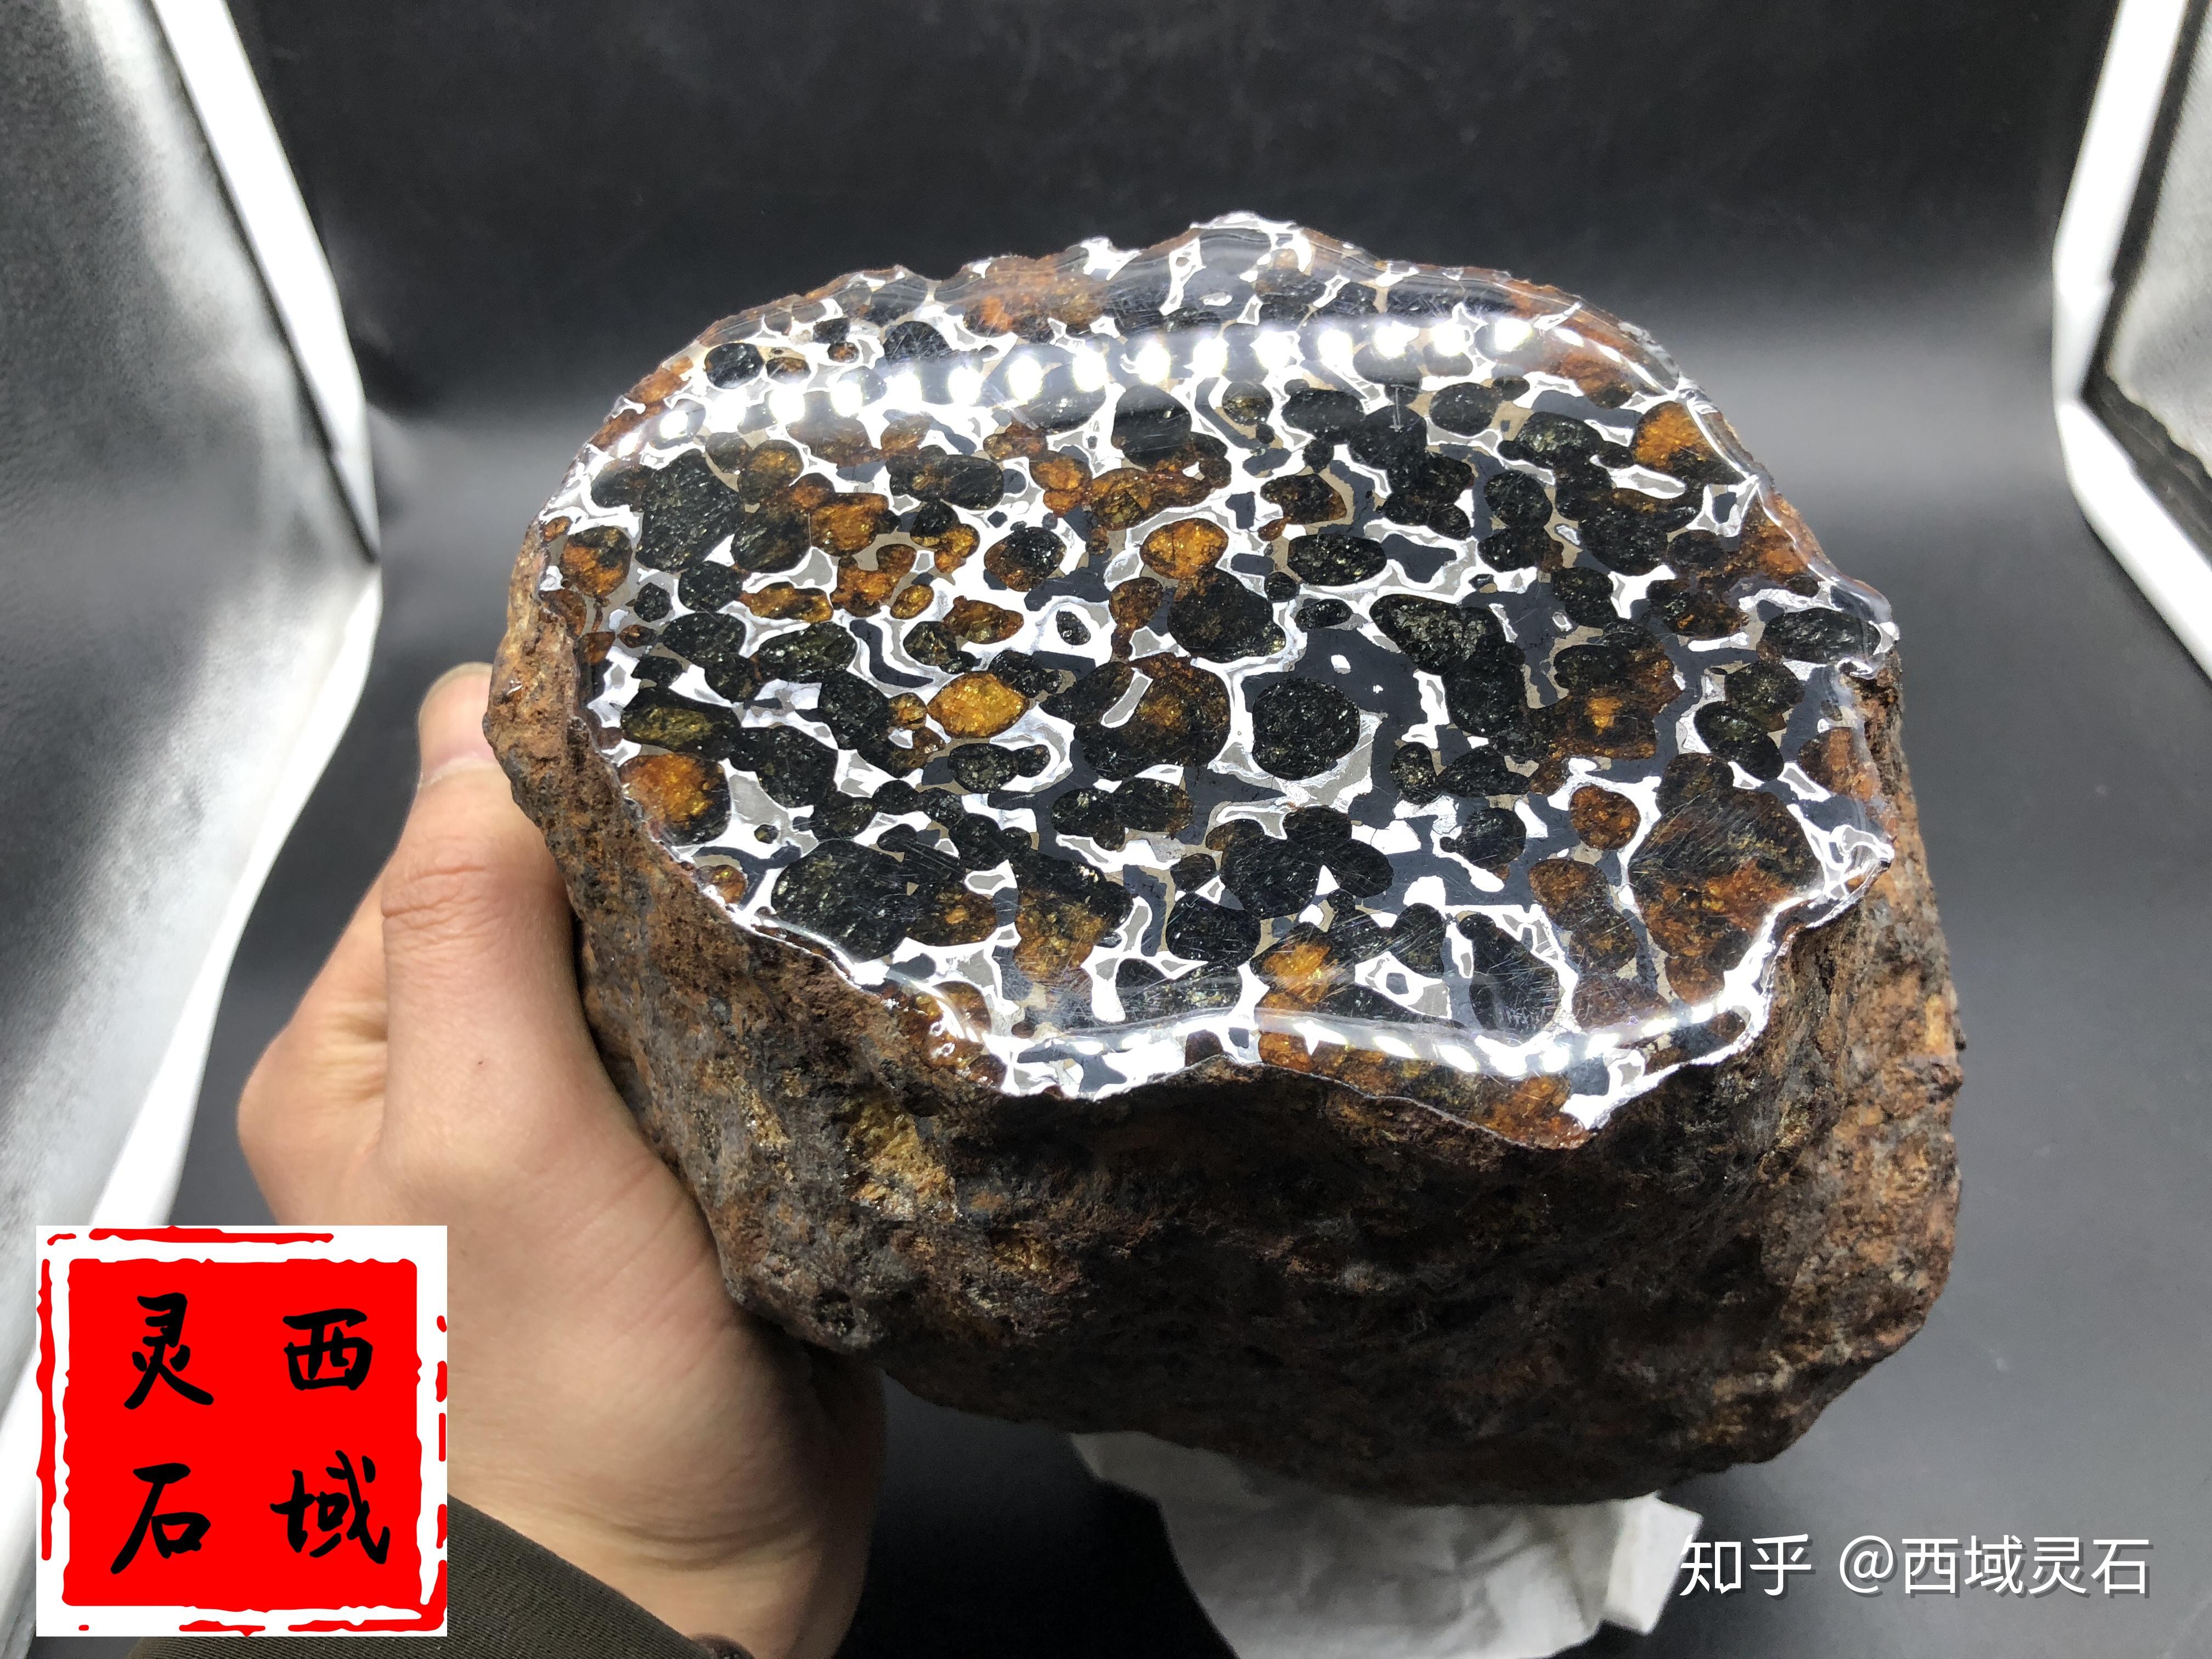 新疆蓝莓陨石原石价格,最贵的绿石陨石图片 - 伤感说说吧